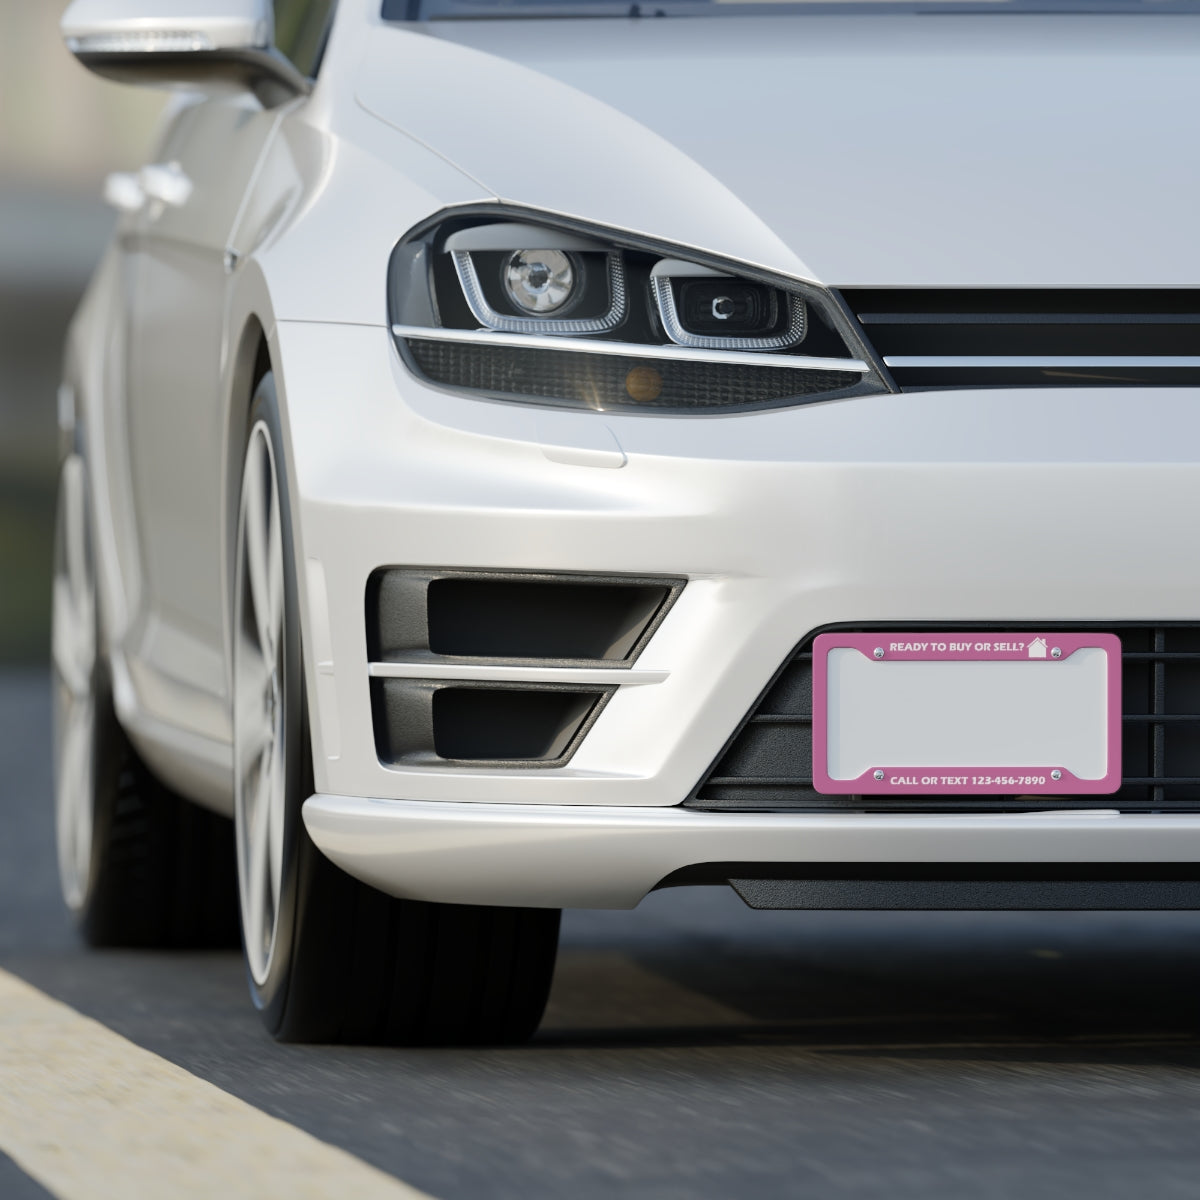 Custom License Plate Frame - Buy/Sell - Pink